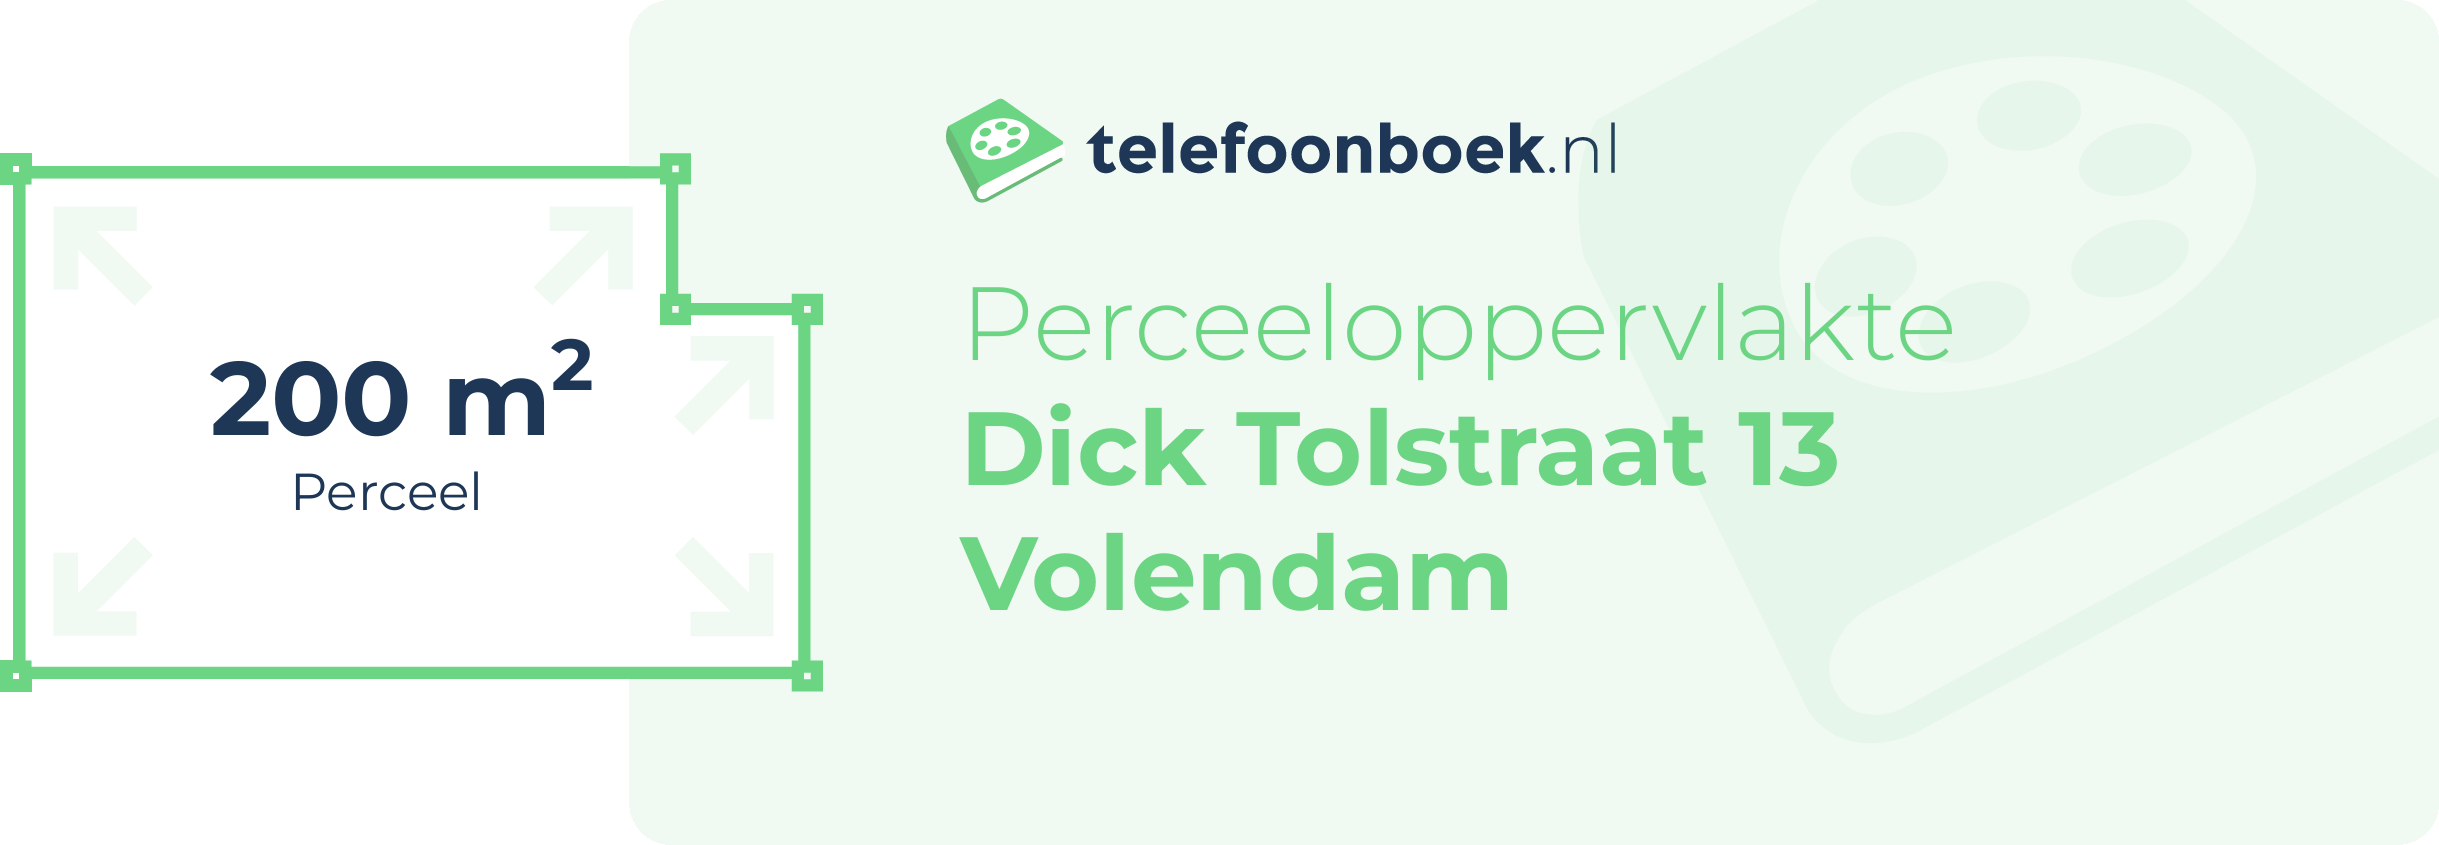 Perceeloppervlakte Dick Tolstraat 13 Volendam